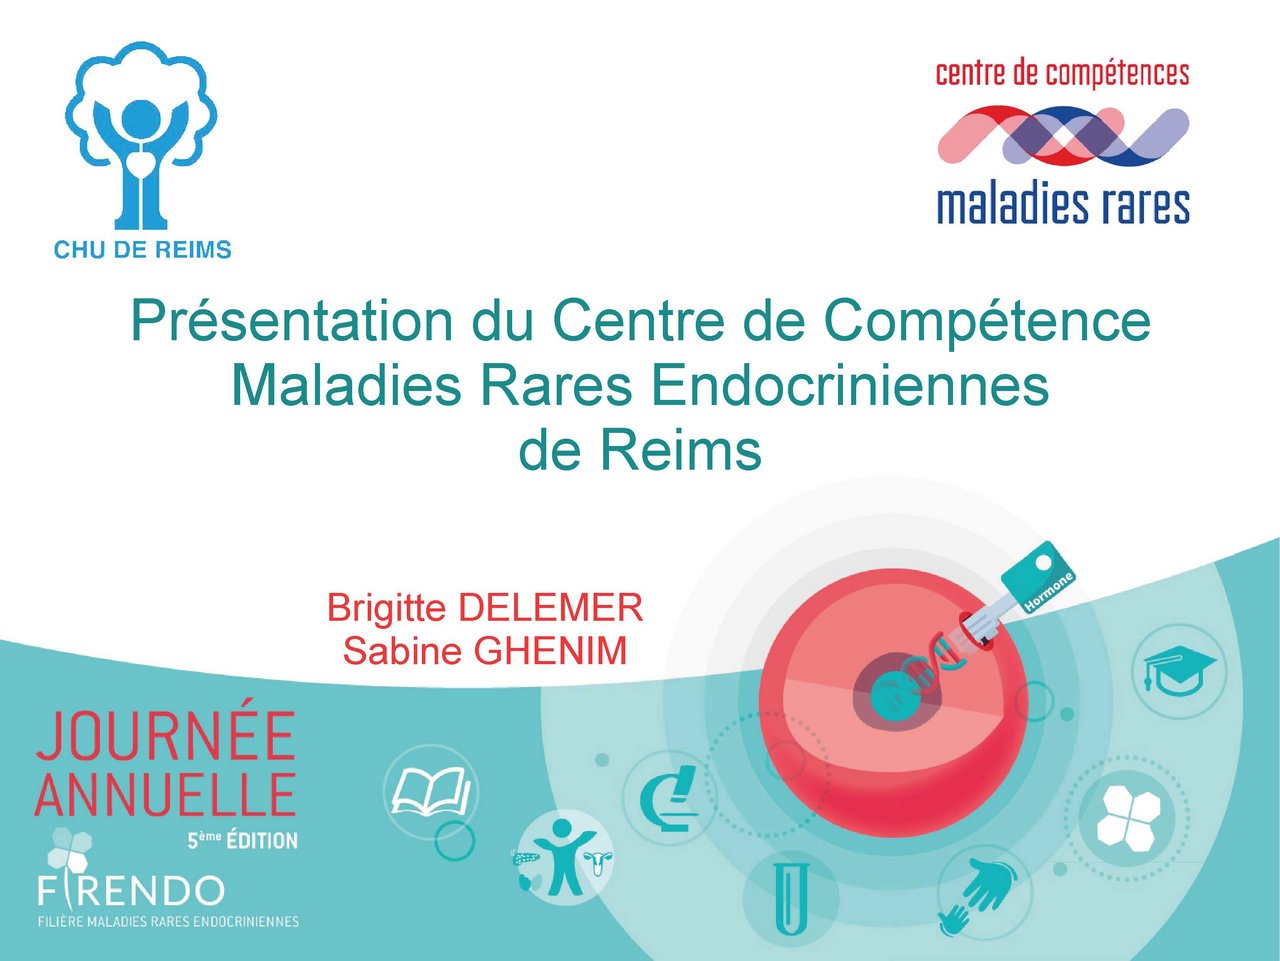 Visuel de Brigitte Delemer « Organisation au sein de 3 centres de compétence : parcours patient, enseignement, recherche »